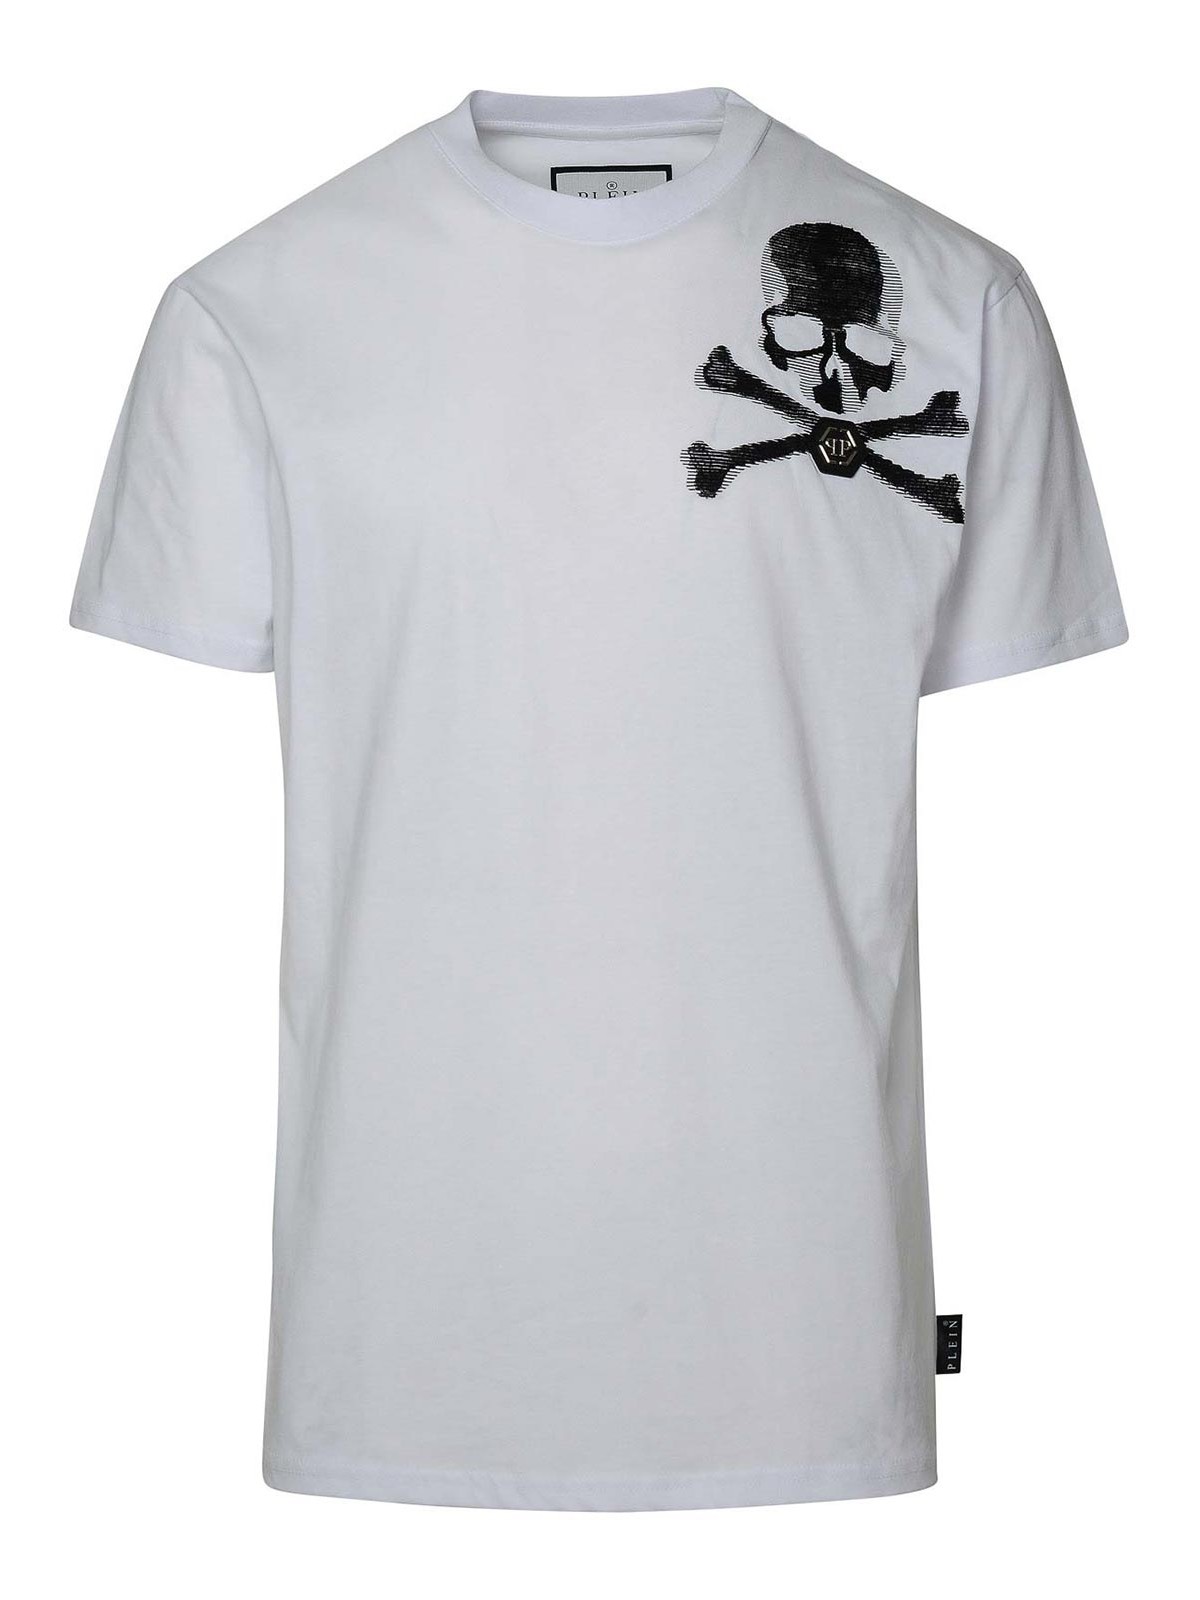 Philipp Plein Skull&bones White Cotton T-shirt